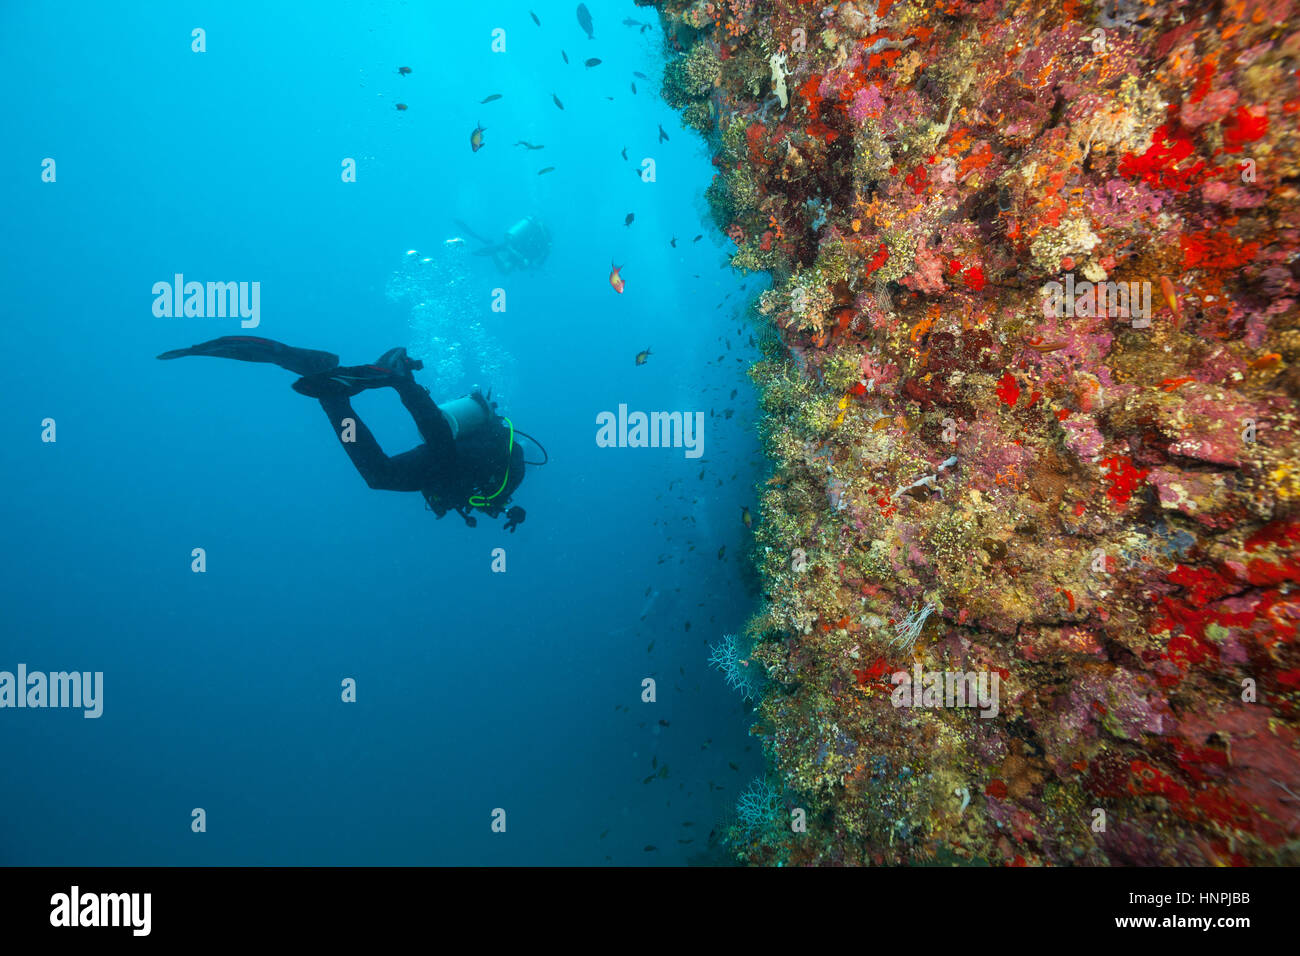 Gruppe von Tauchern Korallenriffe, Atolle der Malediven, Indischer Ozean zu erkunden. Viel schöne farbige kleine Fische und Weichkorallen im Vordergrund Stockfoto